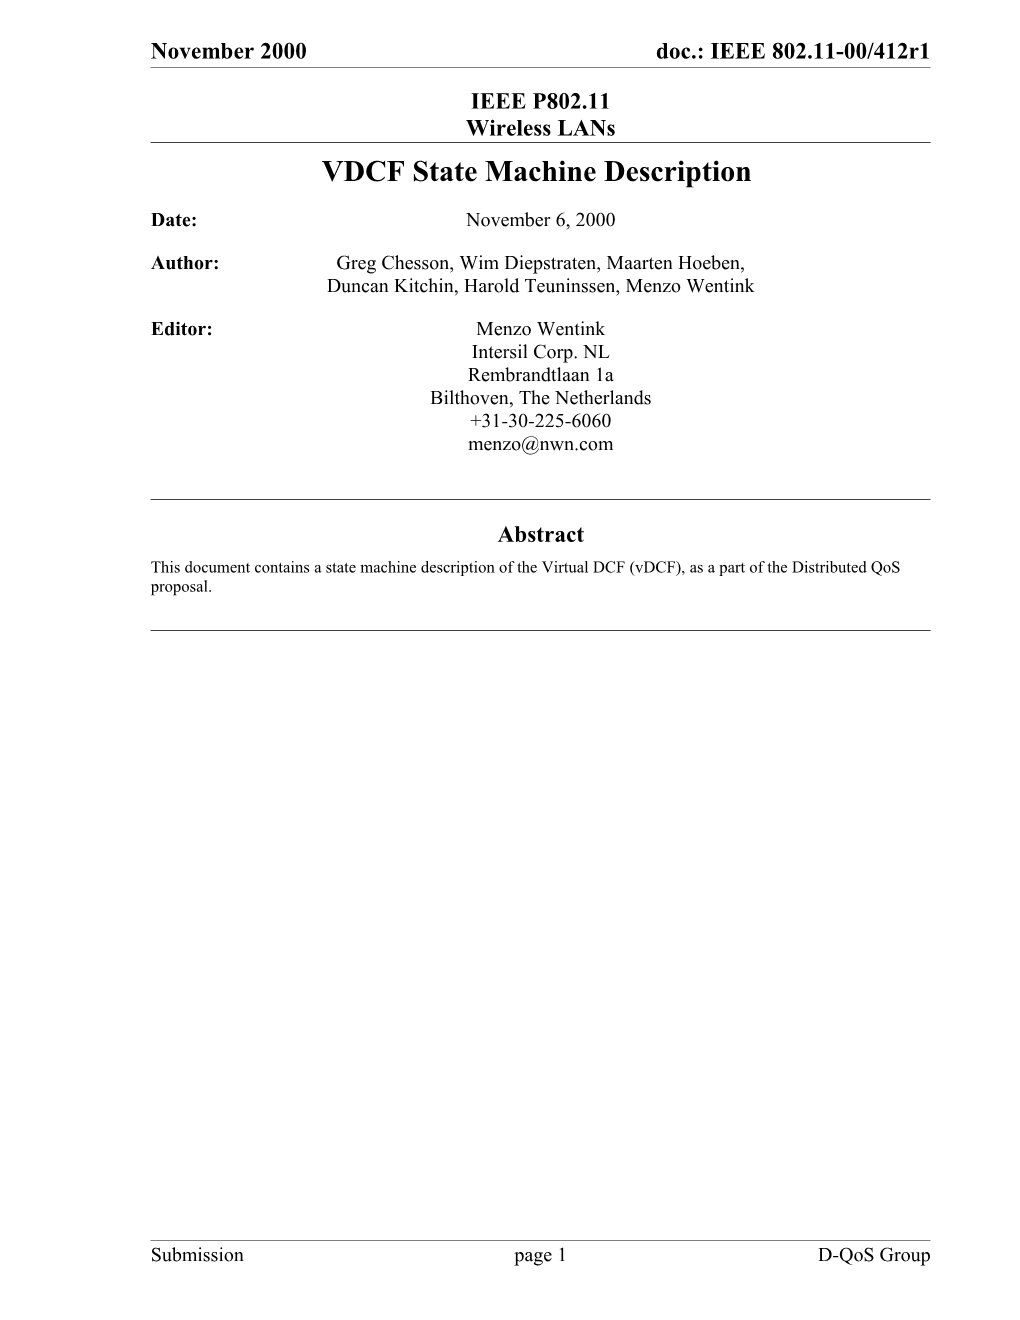 VDCF State Machine Description